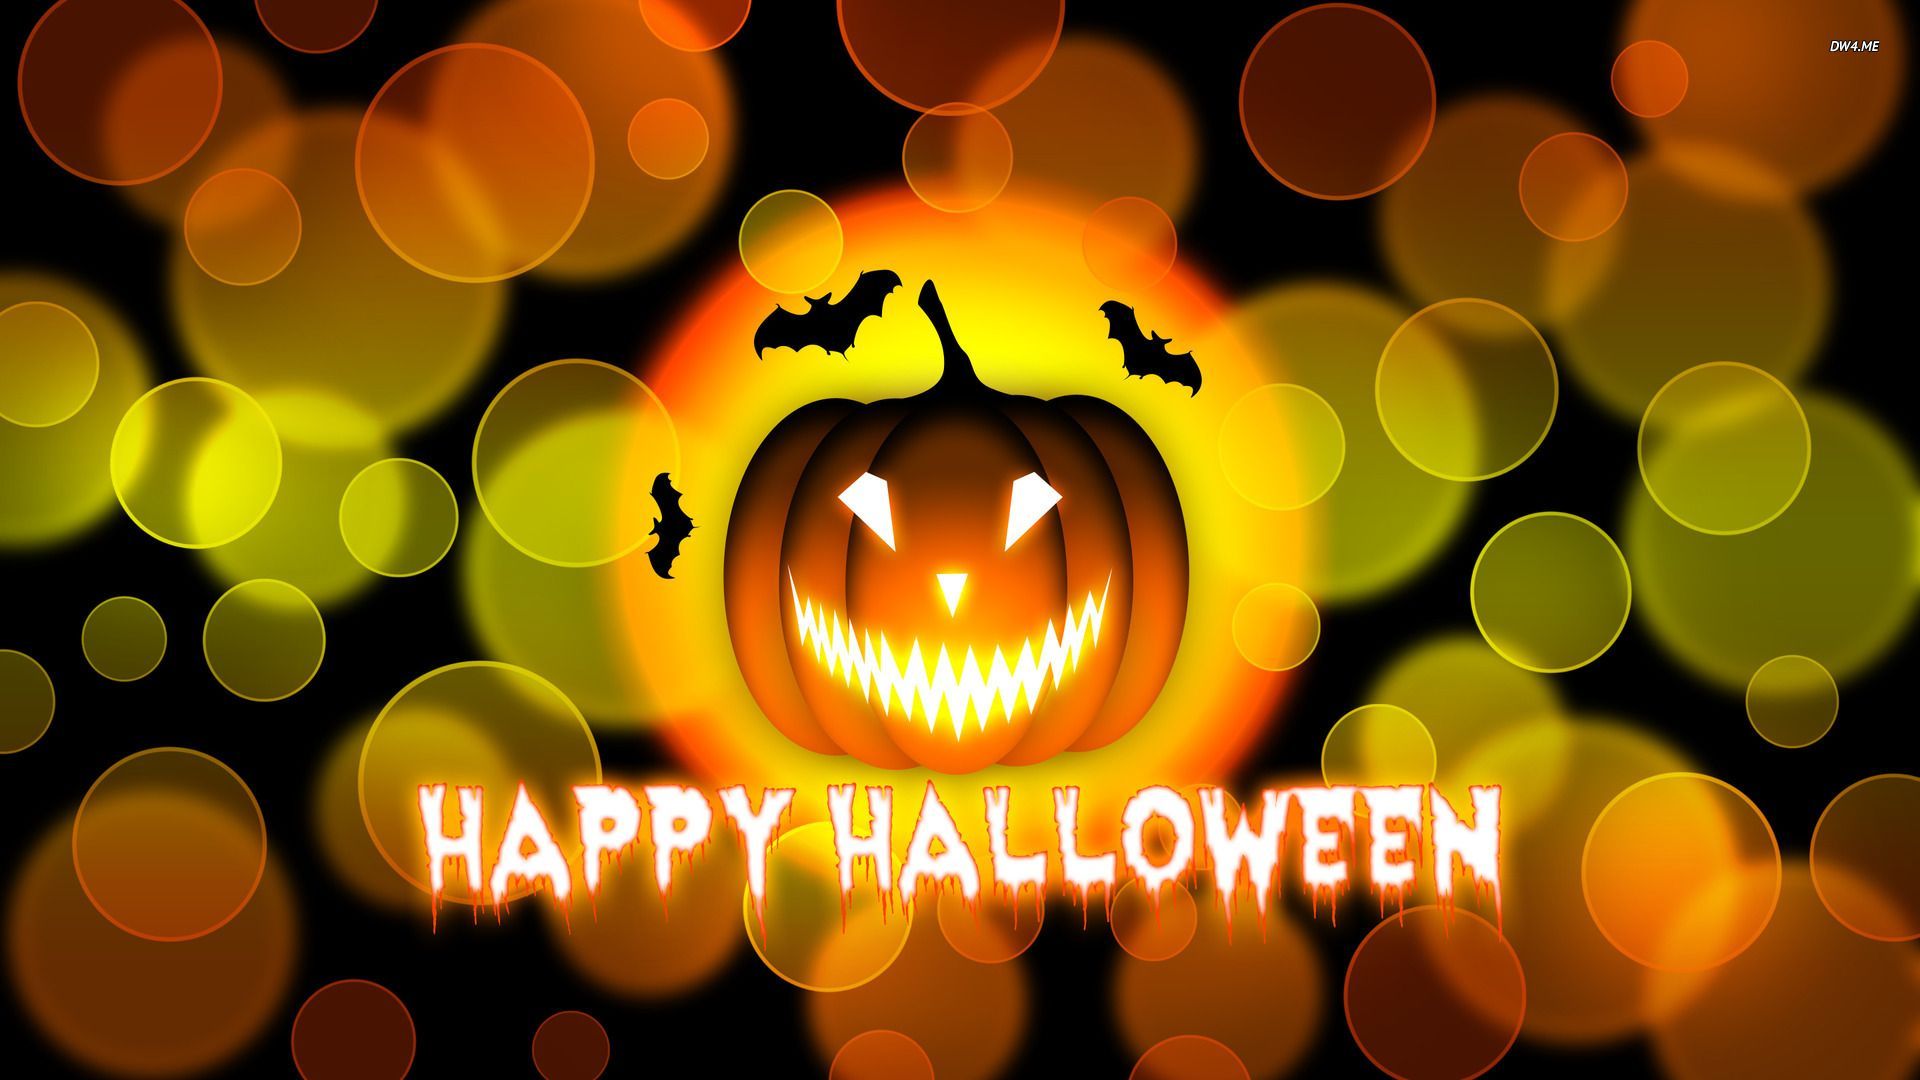 Happy Halloween Wallpaper For Mac #tTp. Happy halloween picture, Halloween picture, Halloween wallpaper